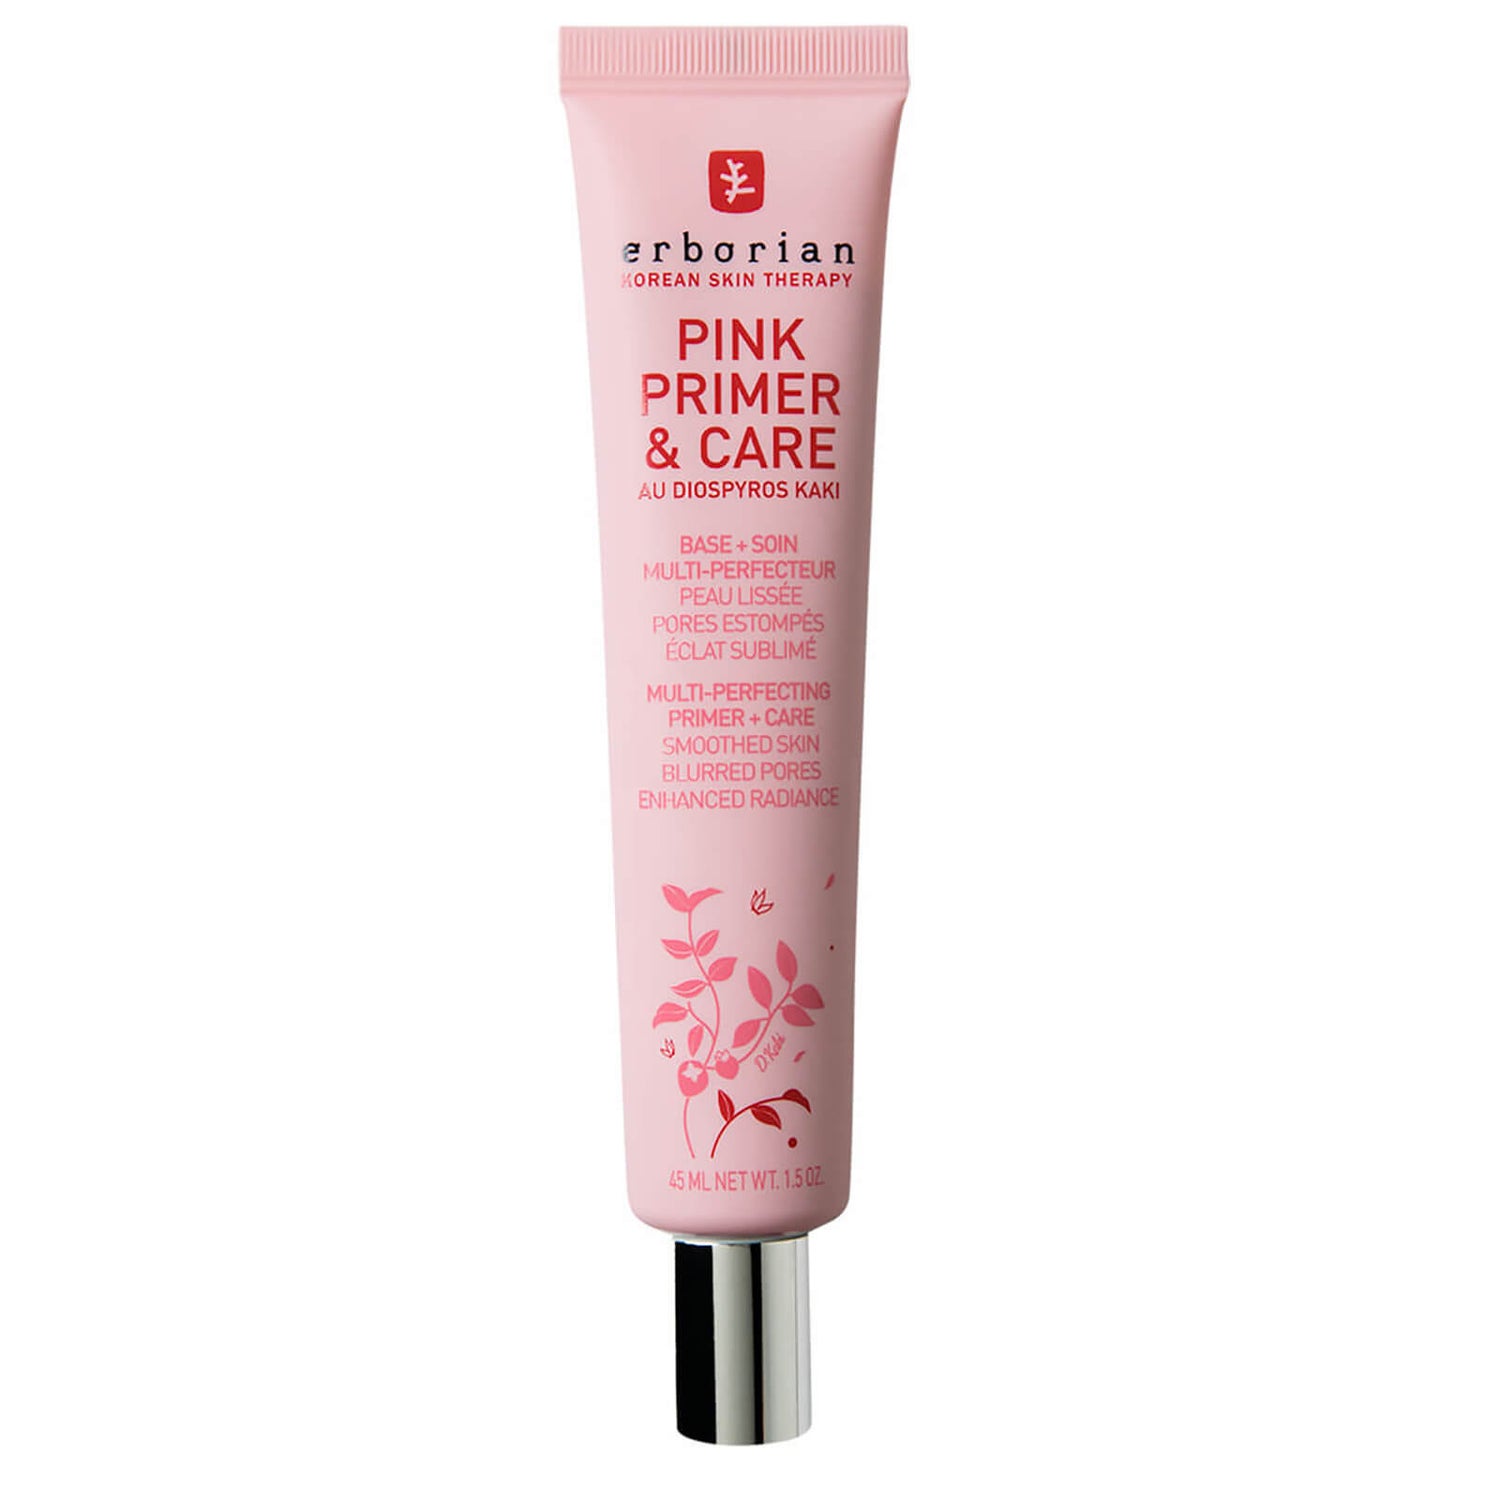 Pink Primer & Care - 45ml - Primer perfezionatore 4 in 1